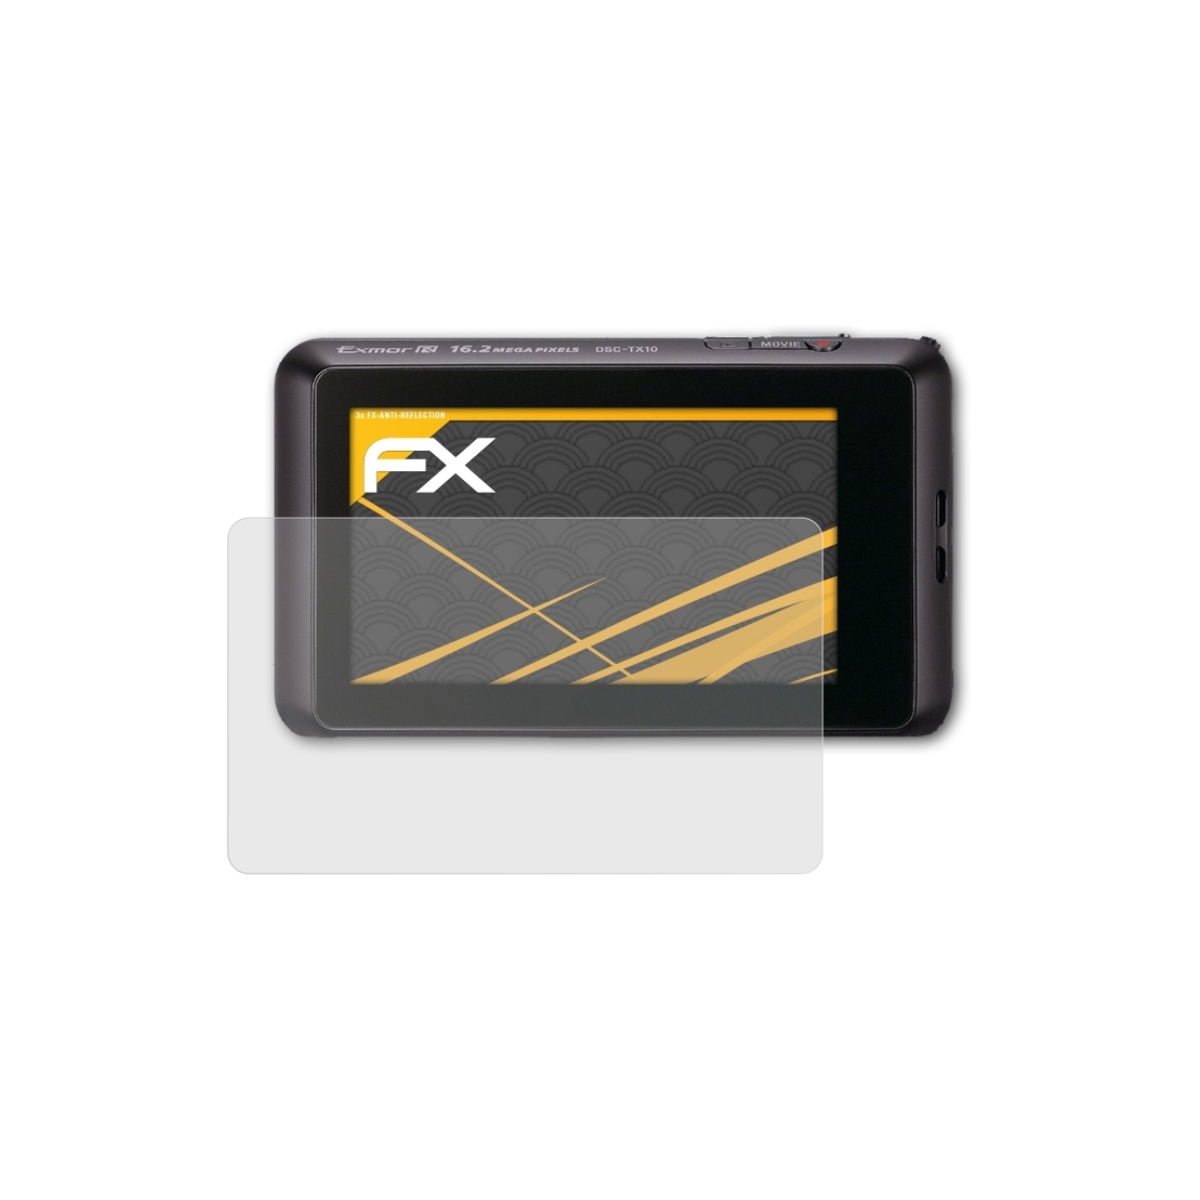 Sony ATFOLIX DSC-TX10) 3x FX-Antireflex Displayschutz(für